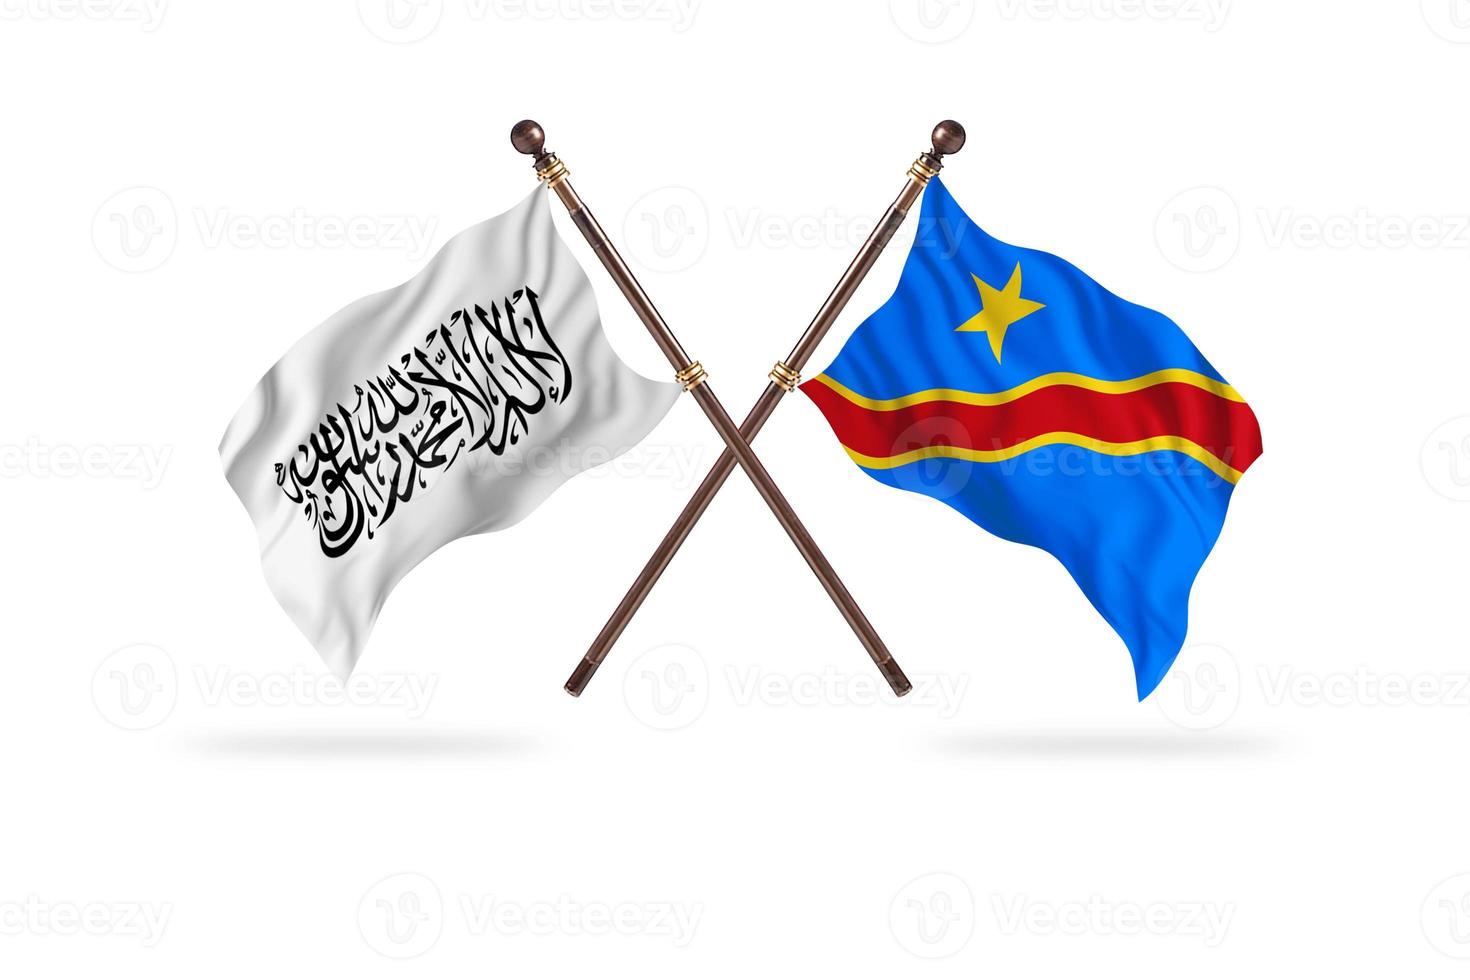 Islamitisch emiraat van afghanistan versus democratisch republiek Congo twee land vlaggen foto